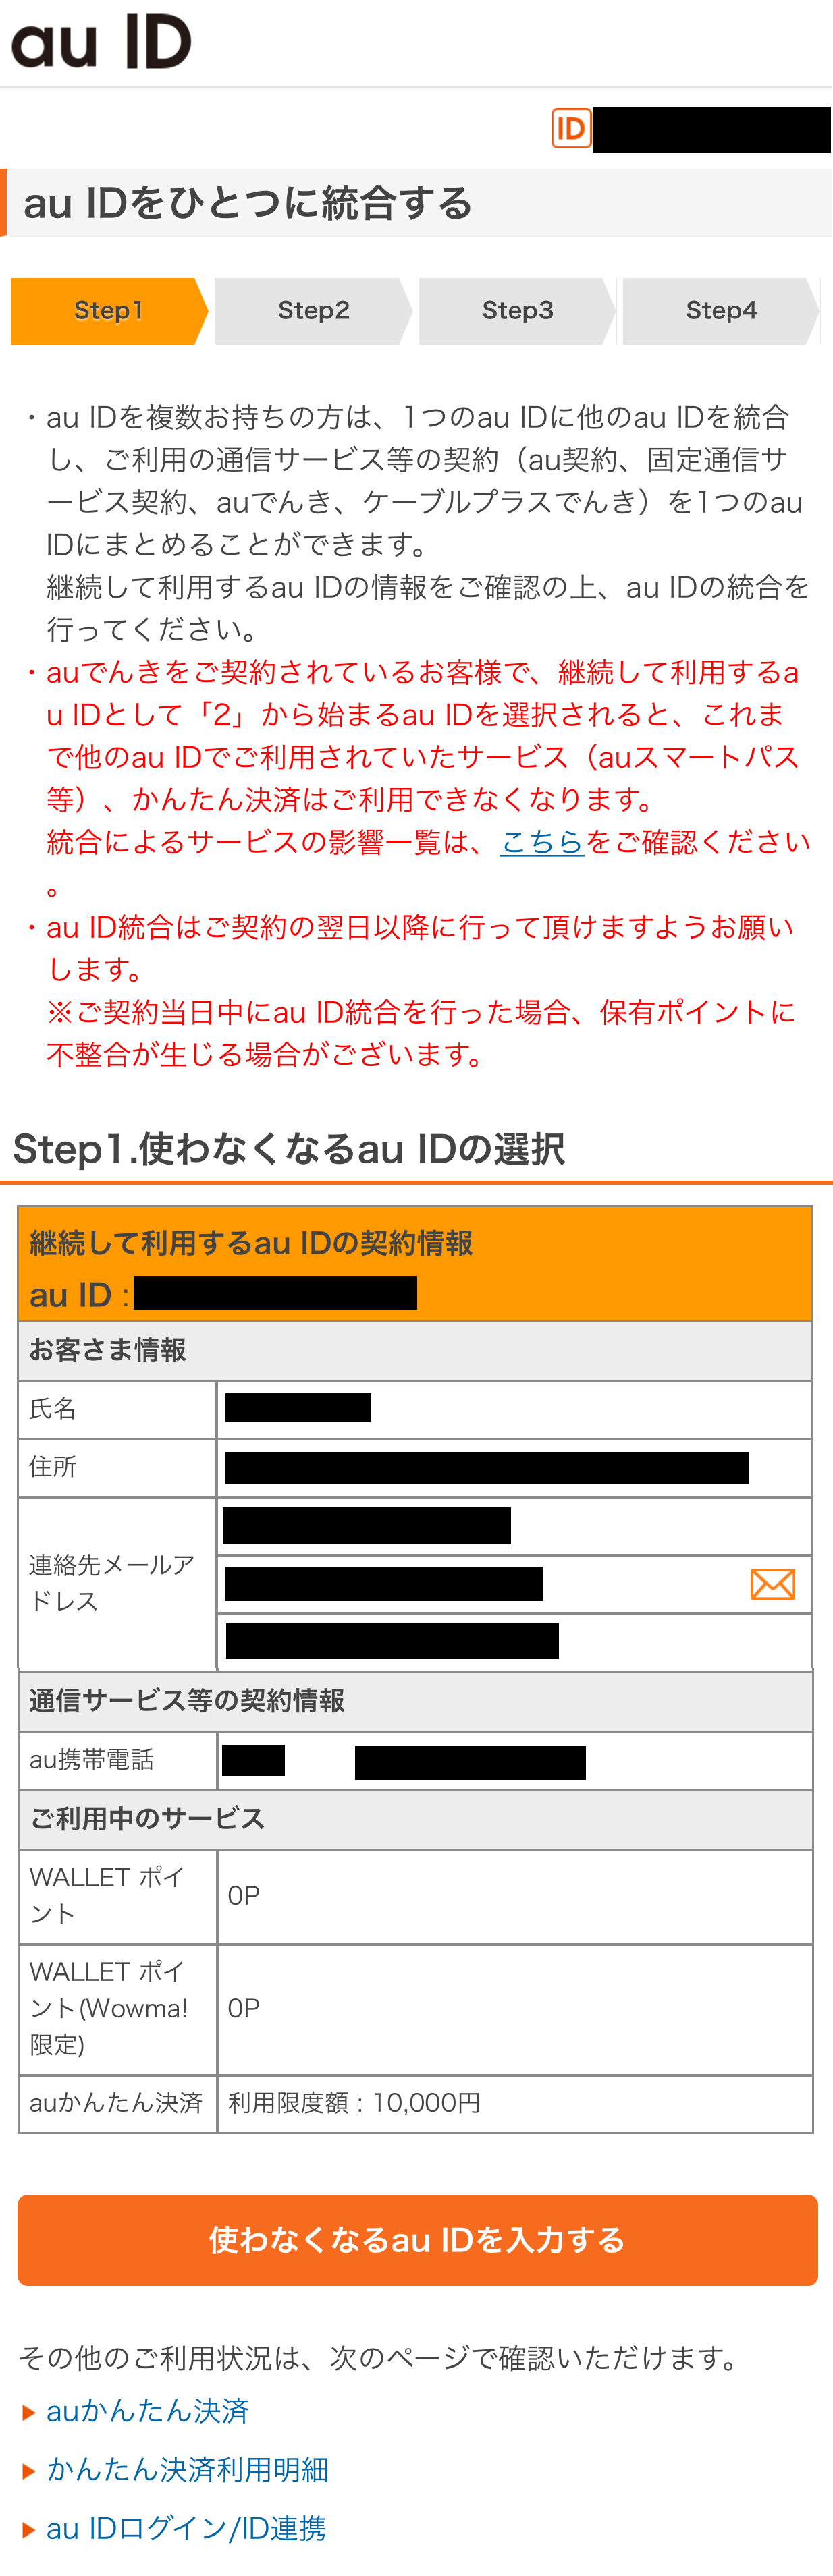 ｢au ID新規登録｣画面へアクセス